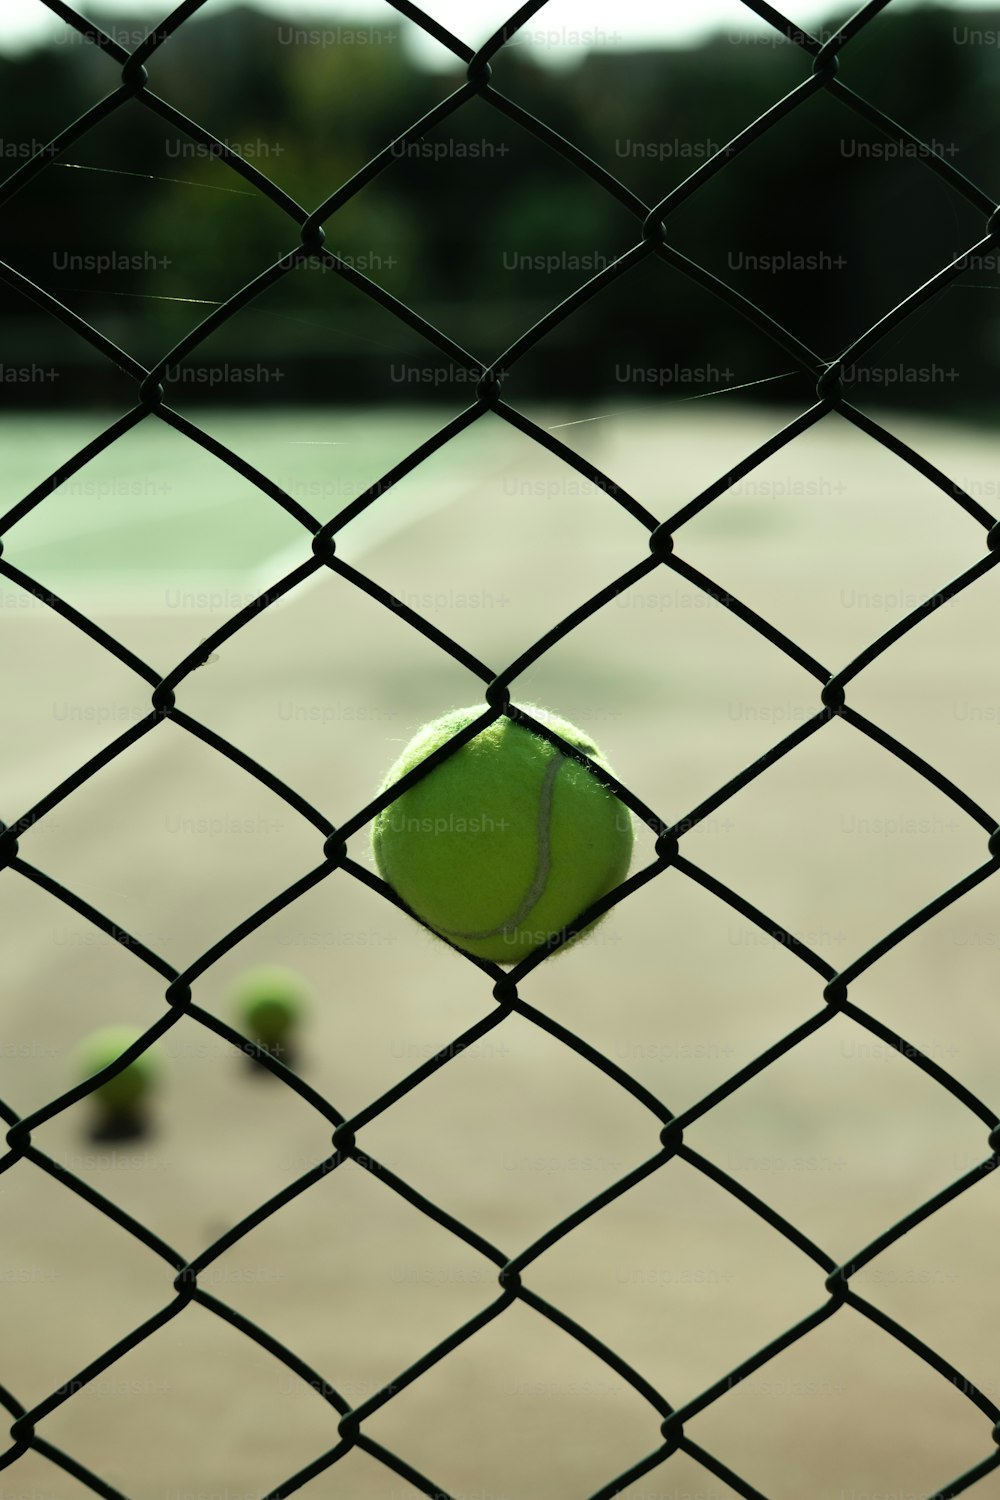 ein Tennisball, der auf einem Tennisplatz sitzt